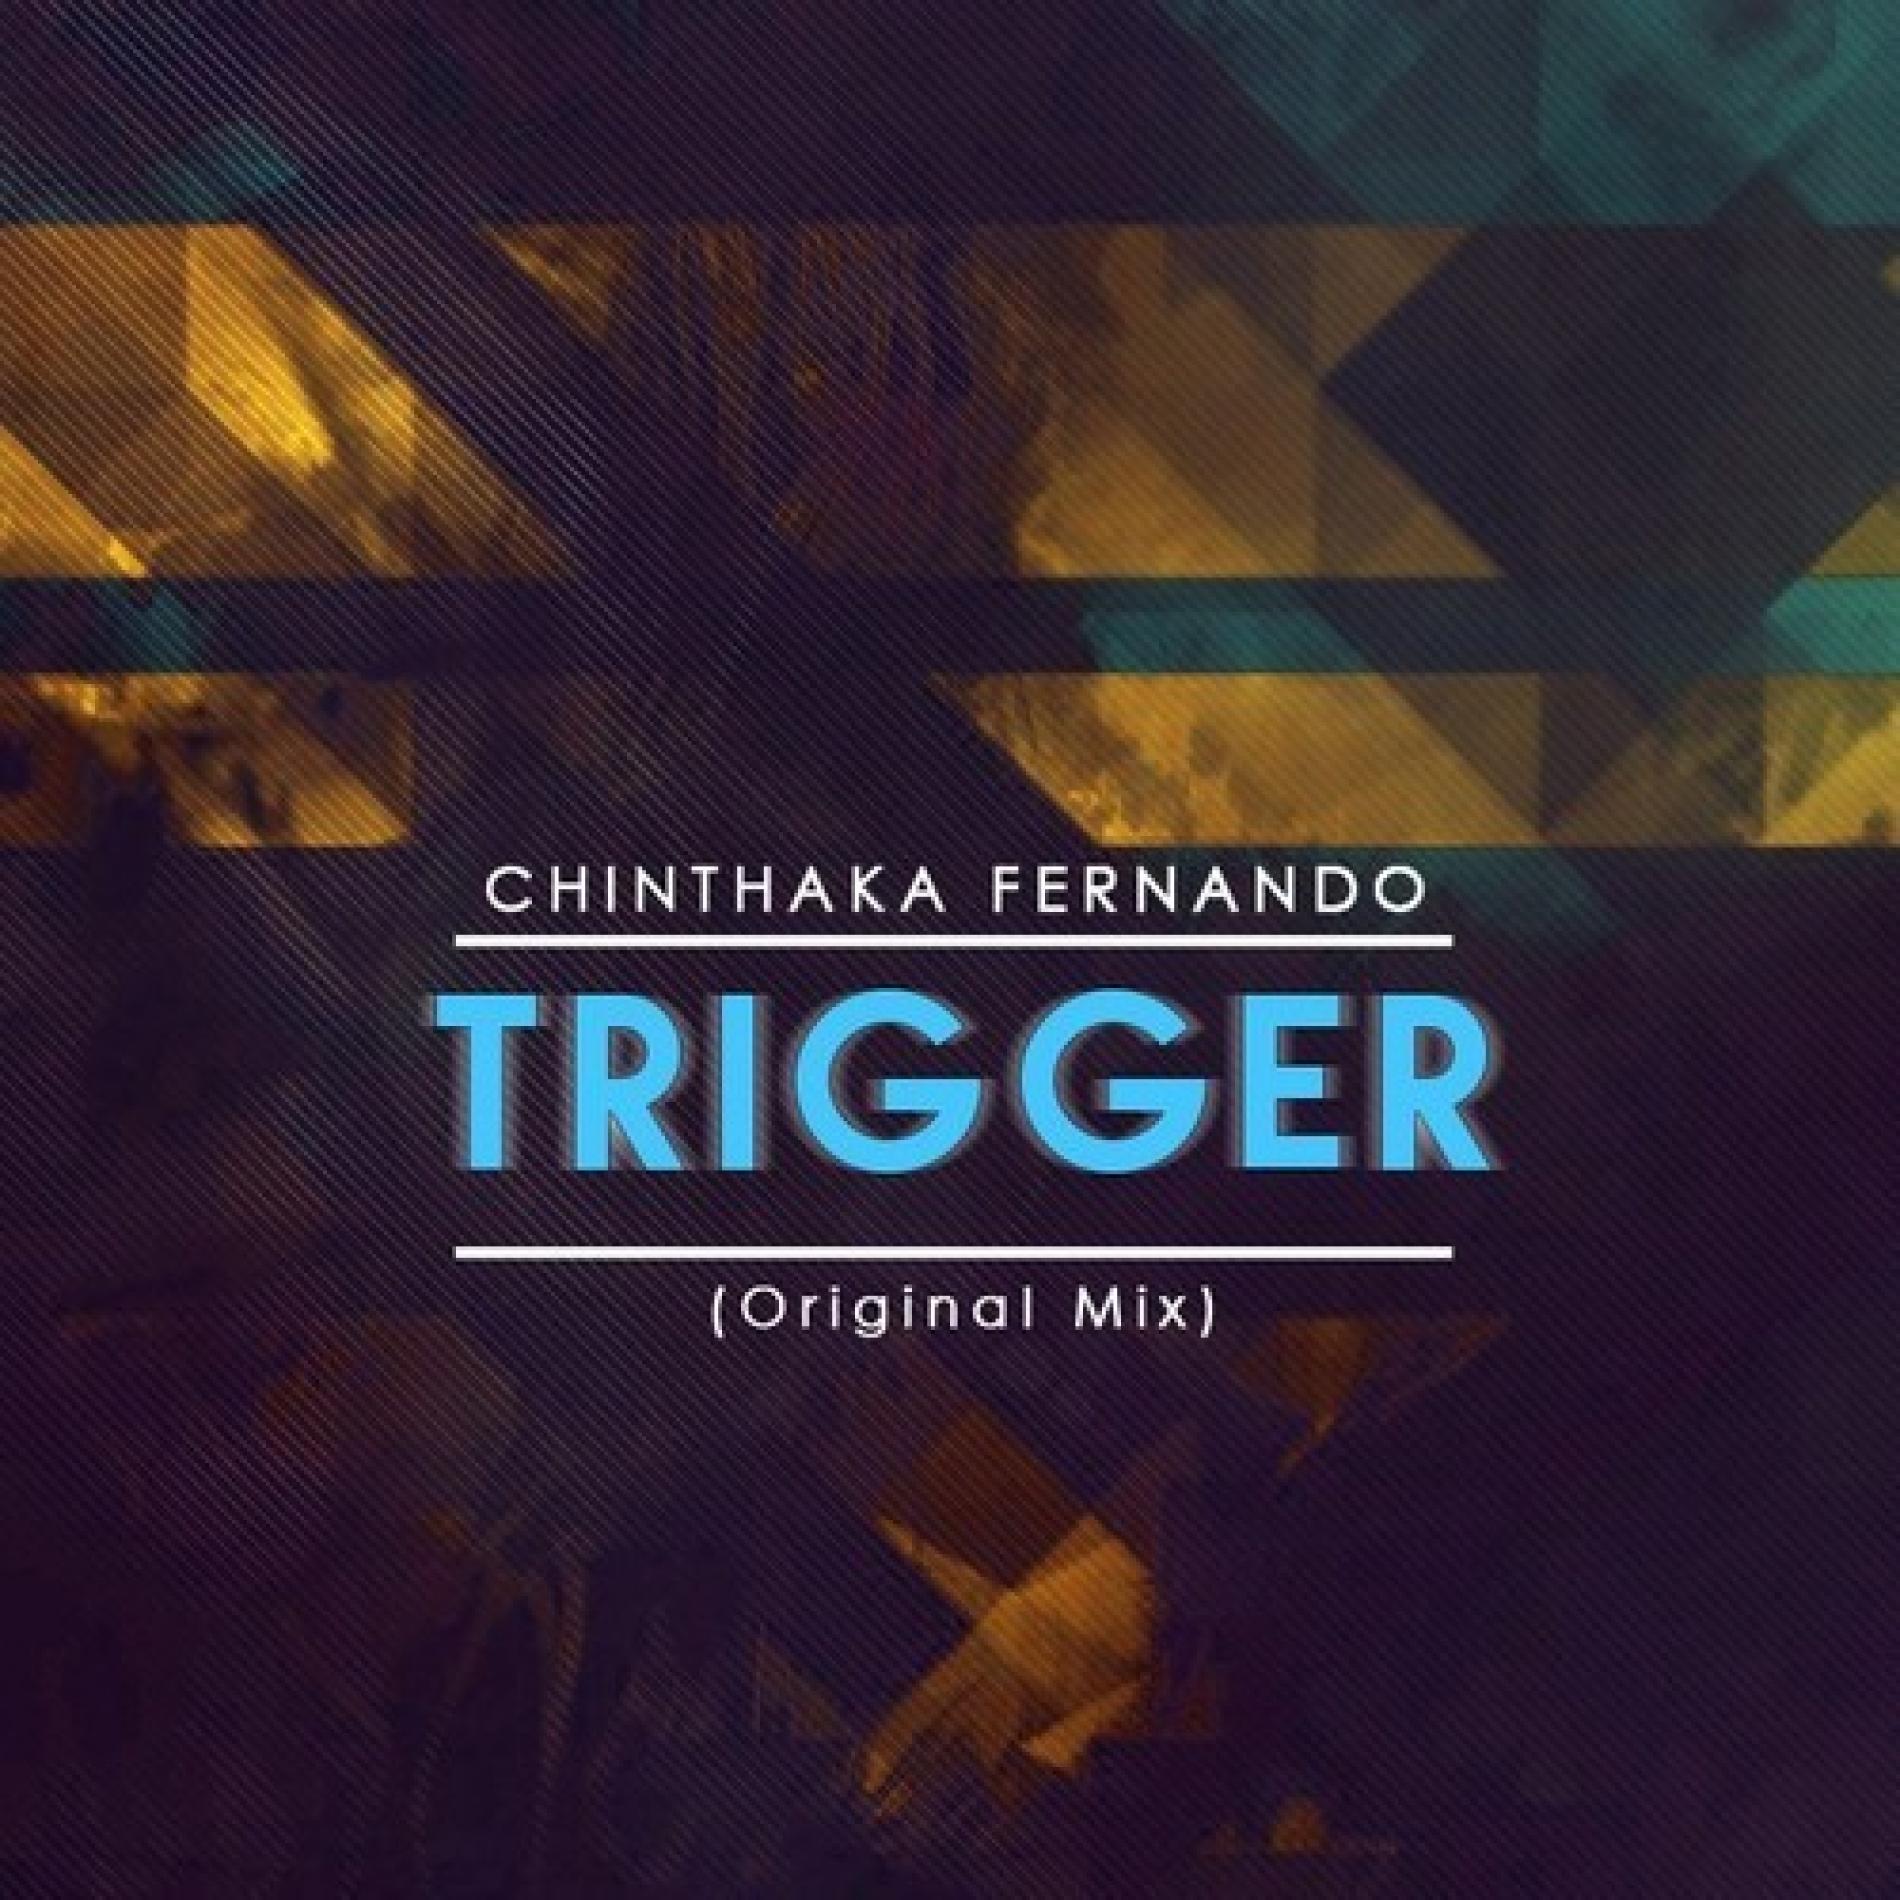 Chinthaka Fernando – Trigger (Original Mix)